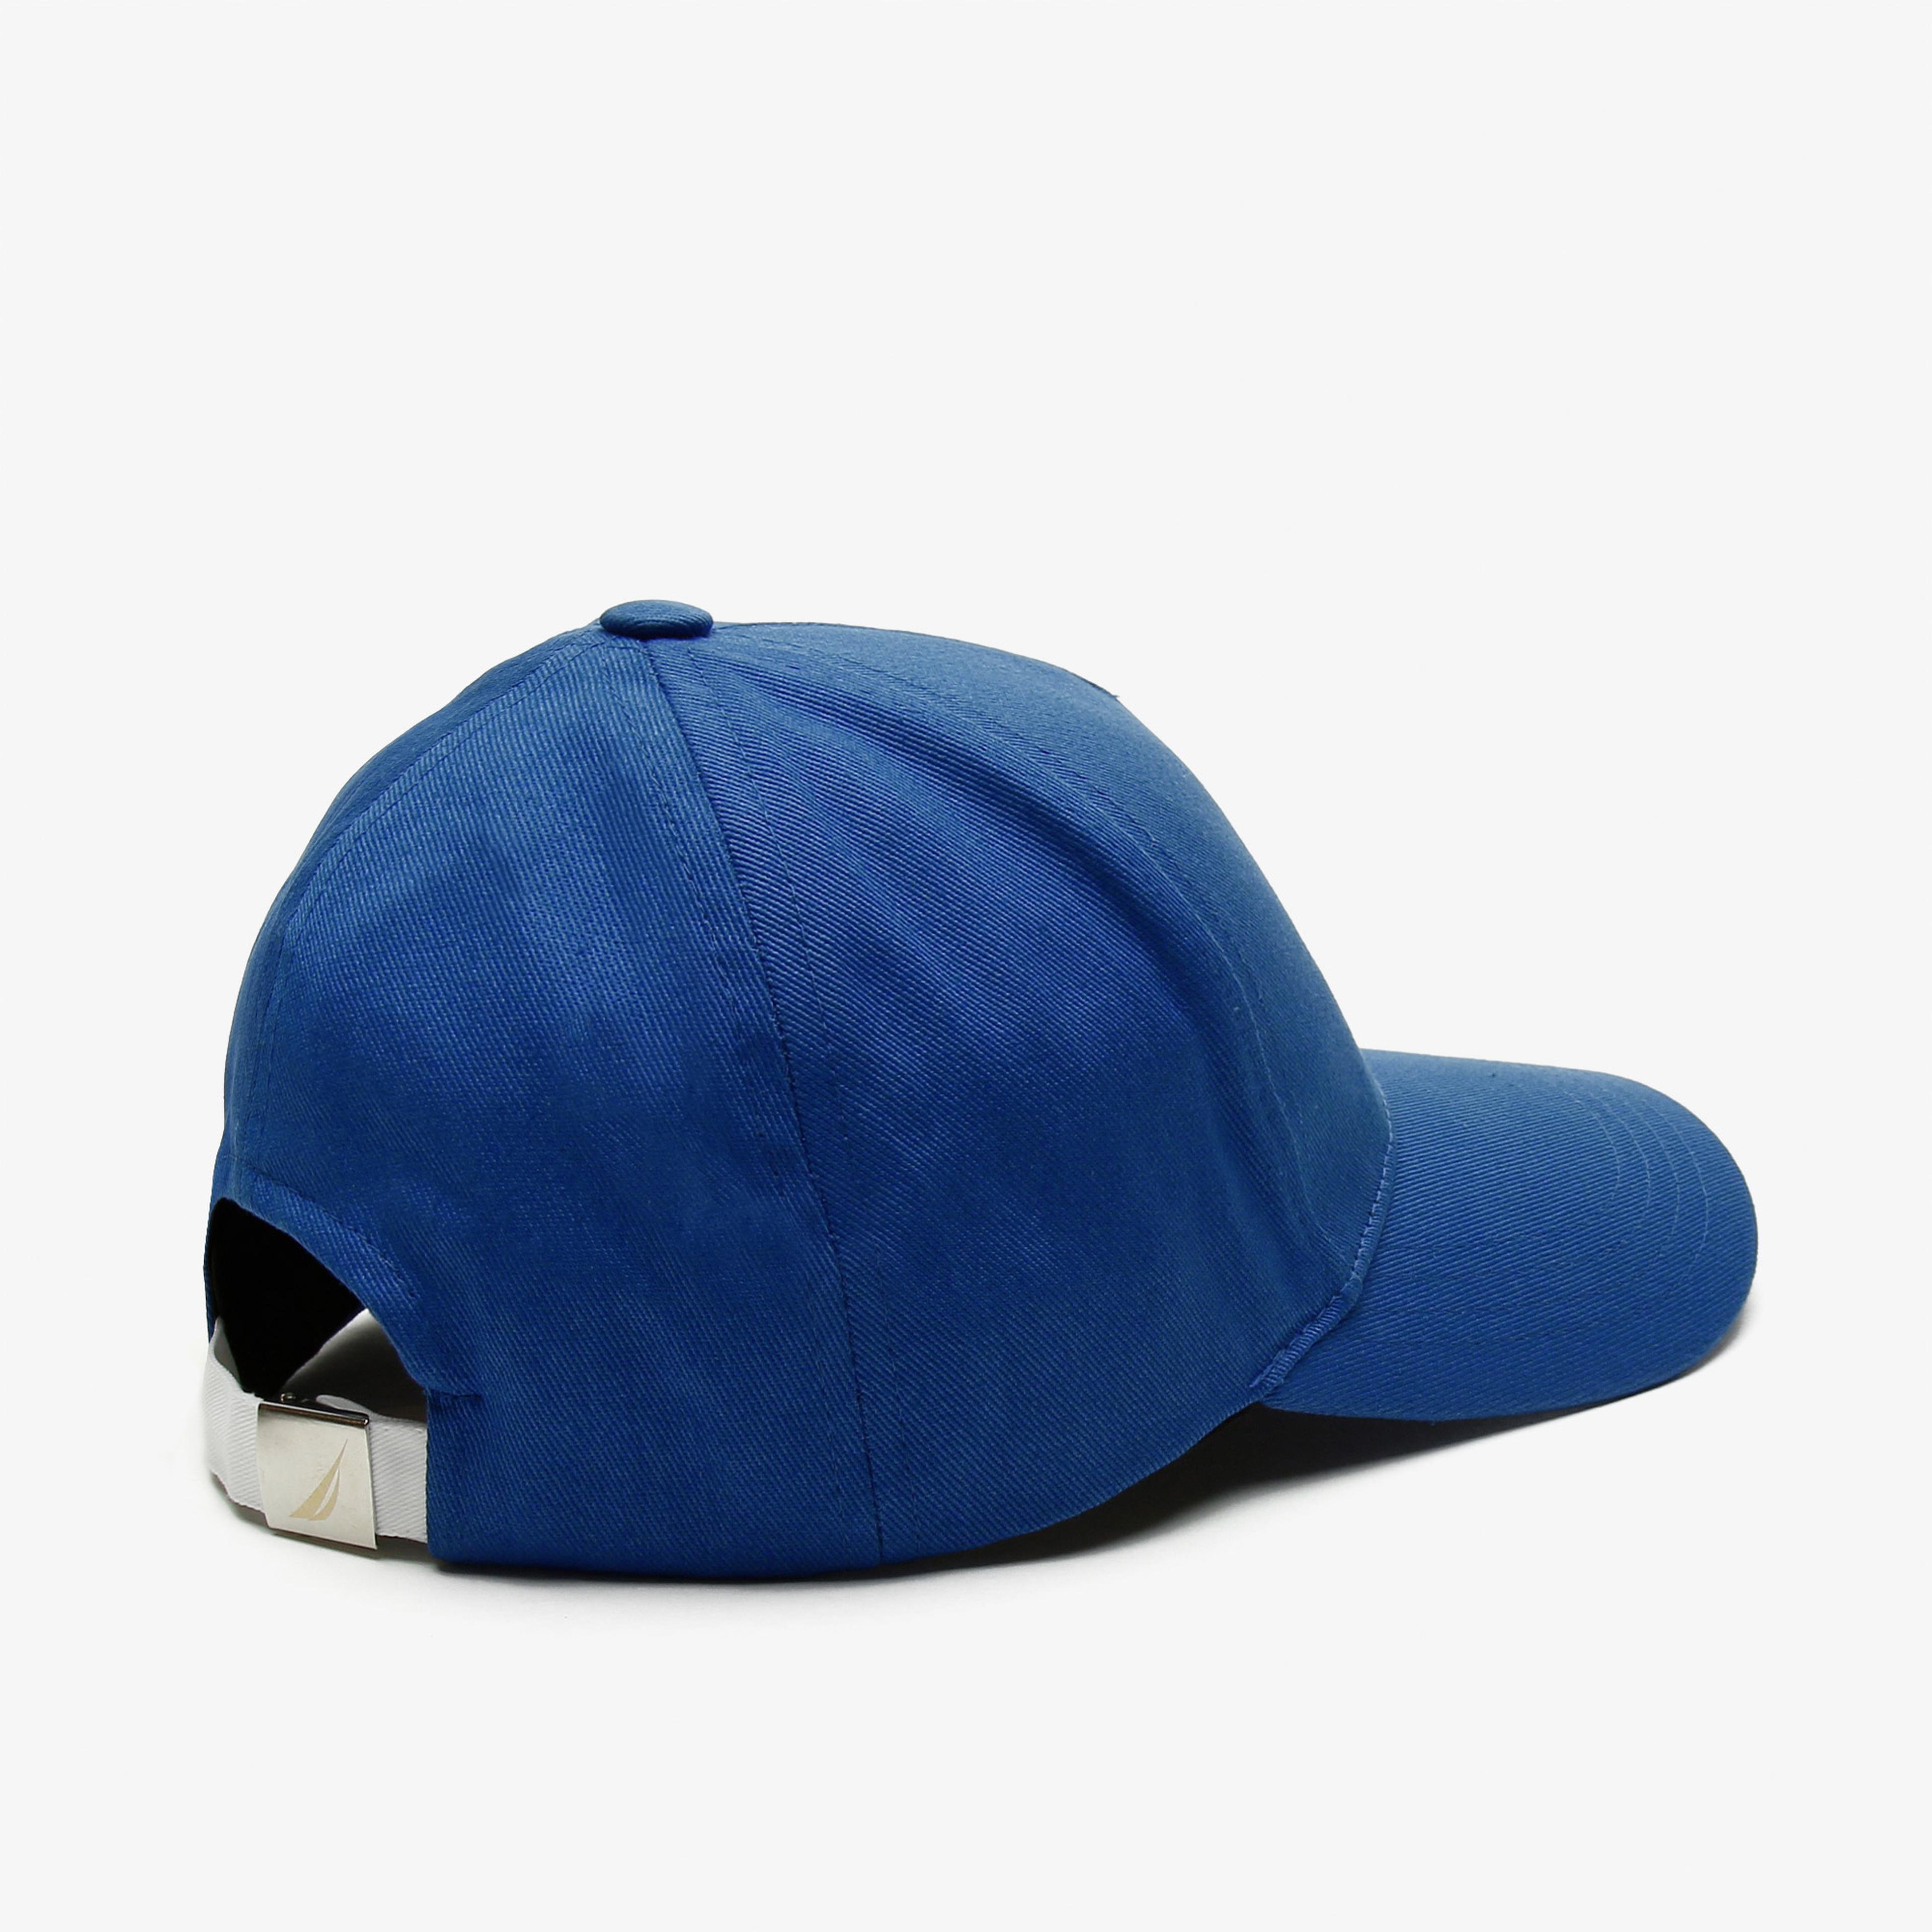 Nautica Erkek Mavi Şapka